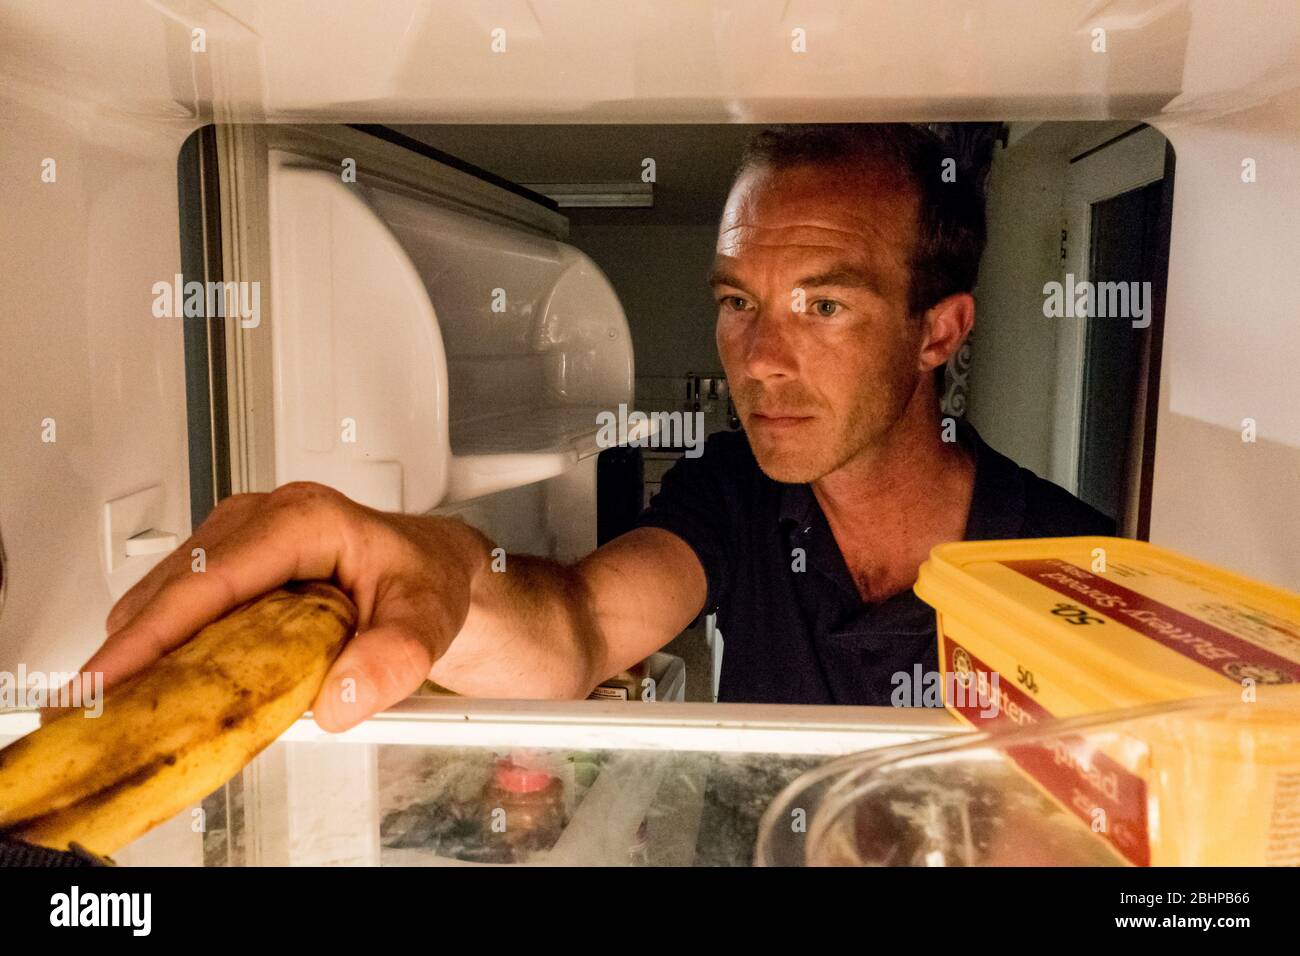 LEOMINSTER, ROYAUME-UNI - 25 AVRIL 2020: Un homme arrive dans son réfrigérateur pour une banane comme collation de nuit à 3 heures du matin à Leominster, Herefordshire sur UN Banque D'Images